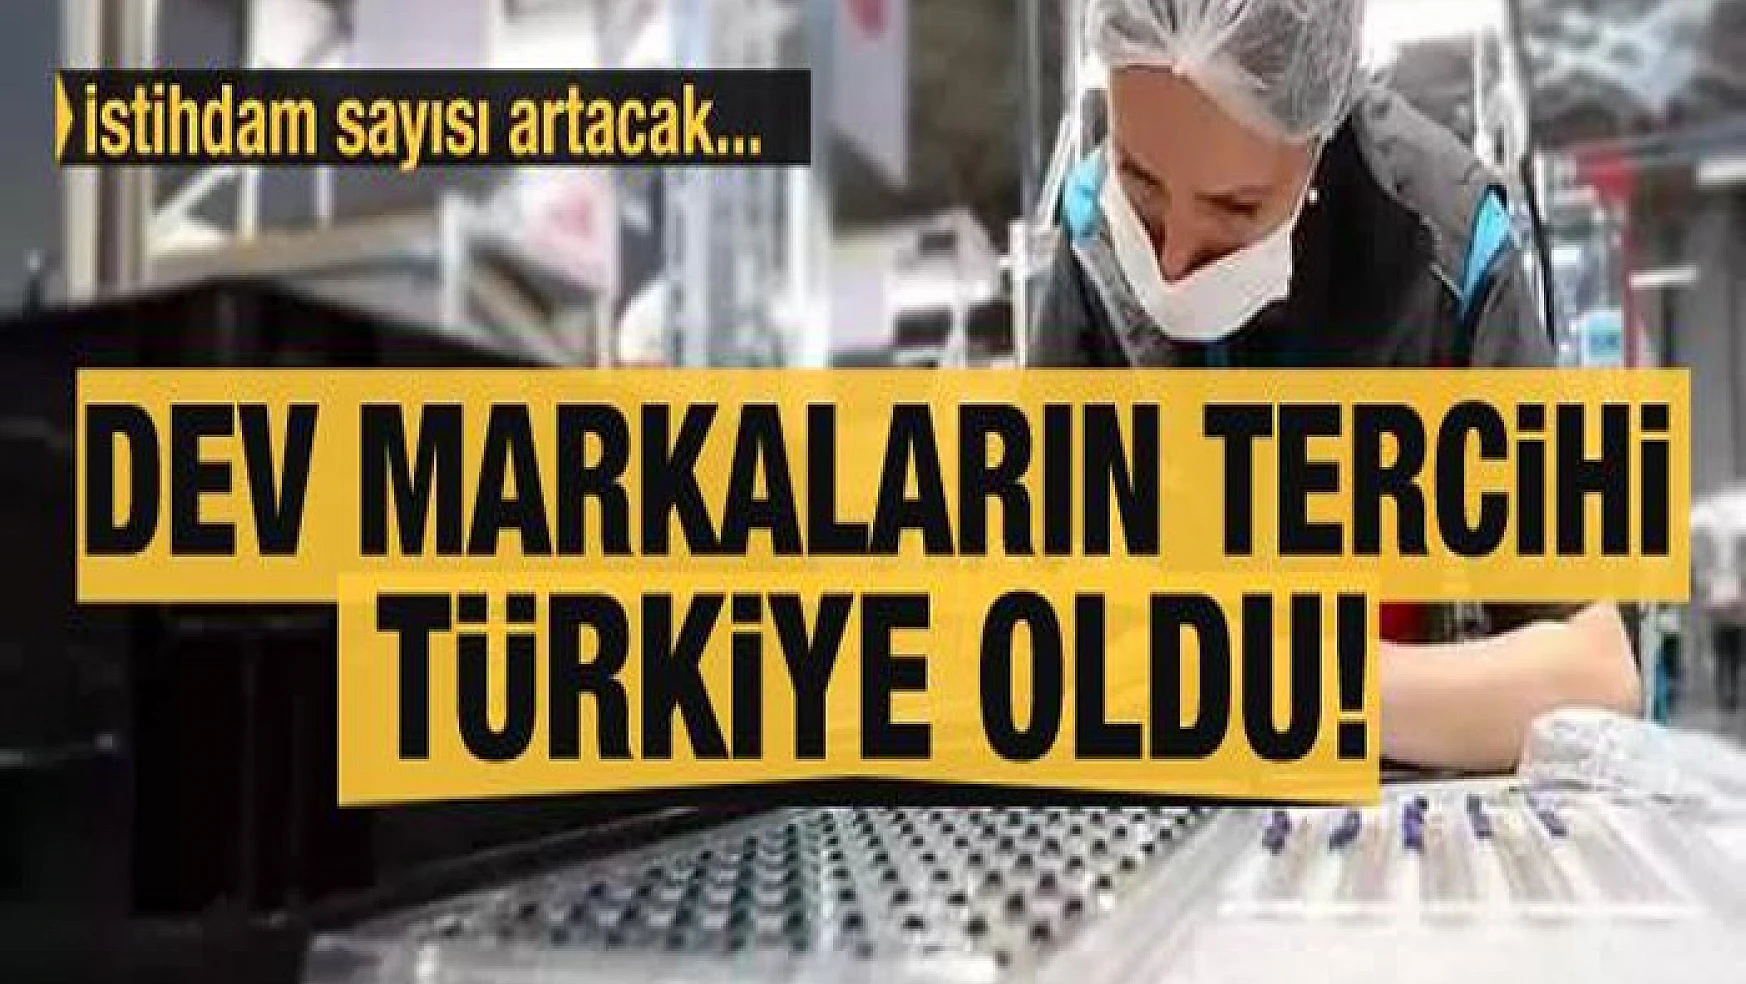 Dev markaların tercihi Türkiye oldu! İstihdam sayısı artacak...